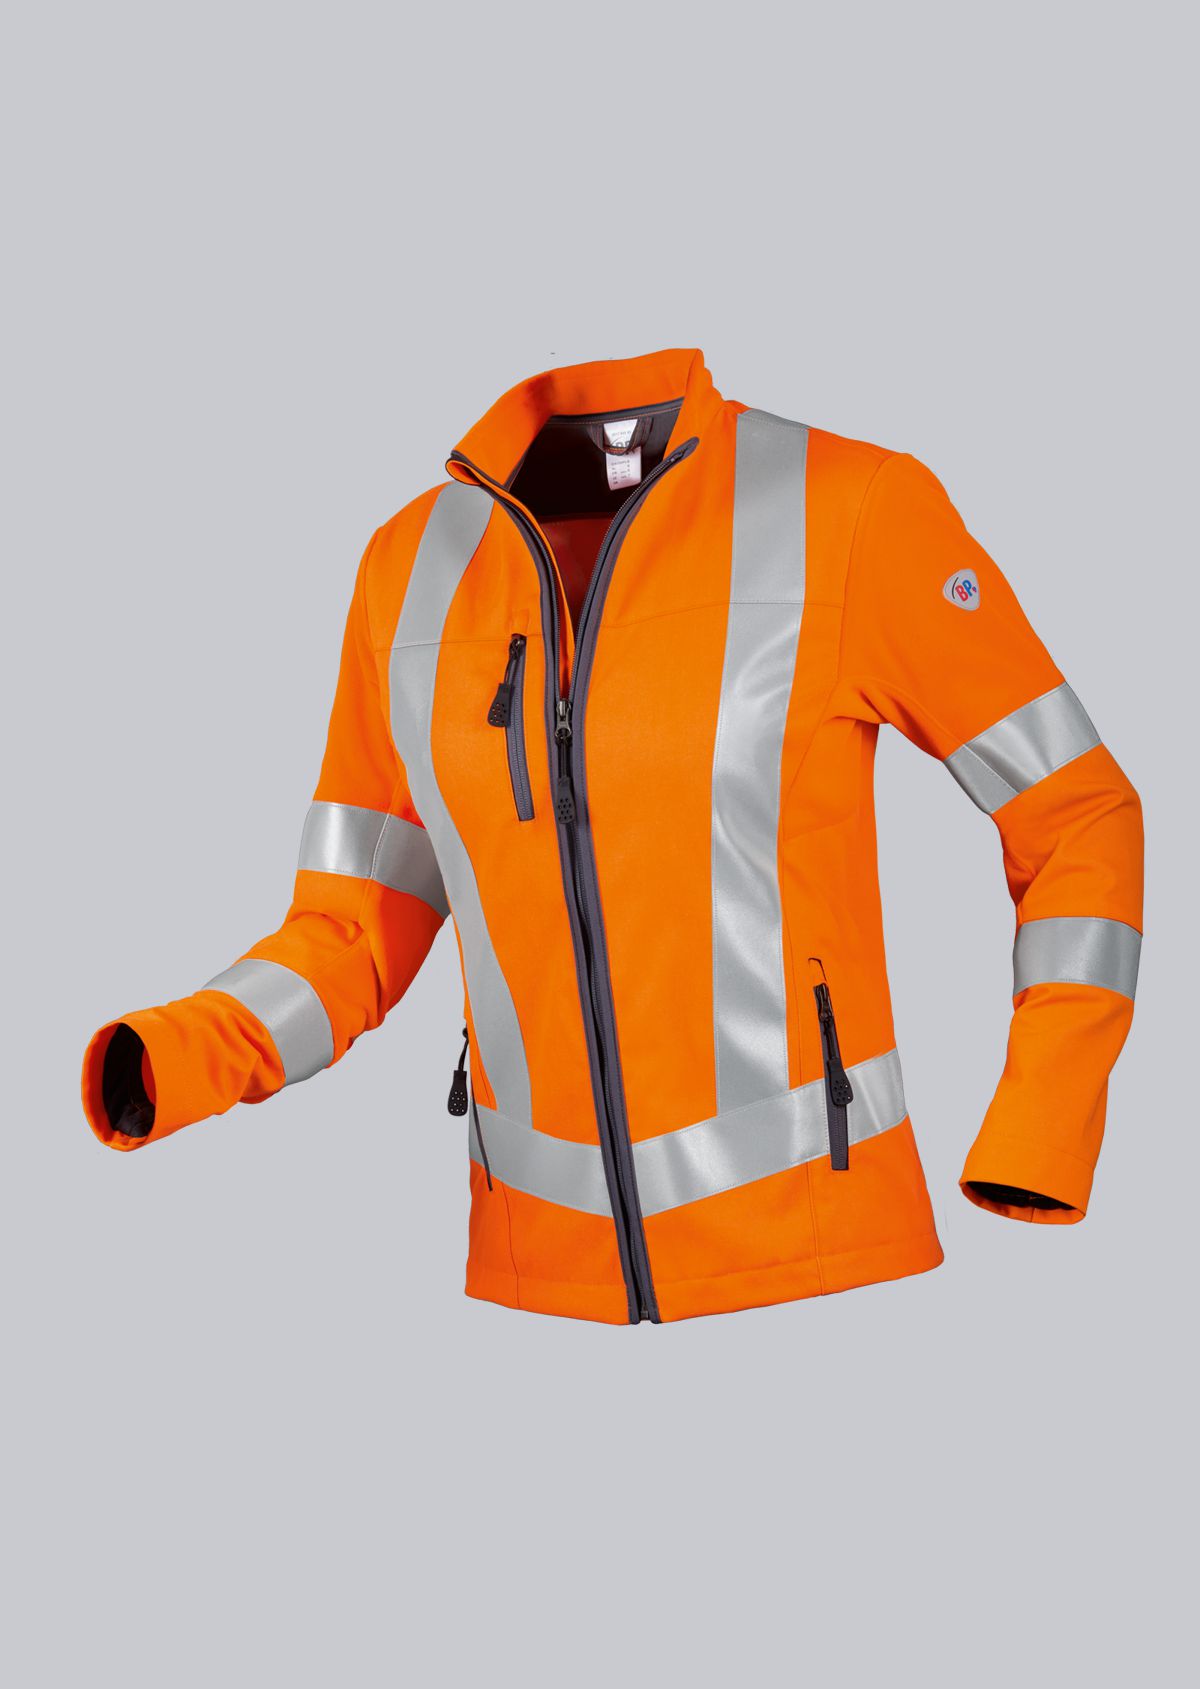 BP® Warnschutz-Hybrid-Jacke für Damen